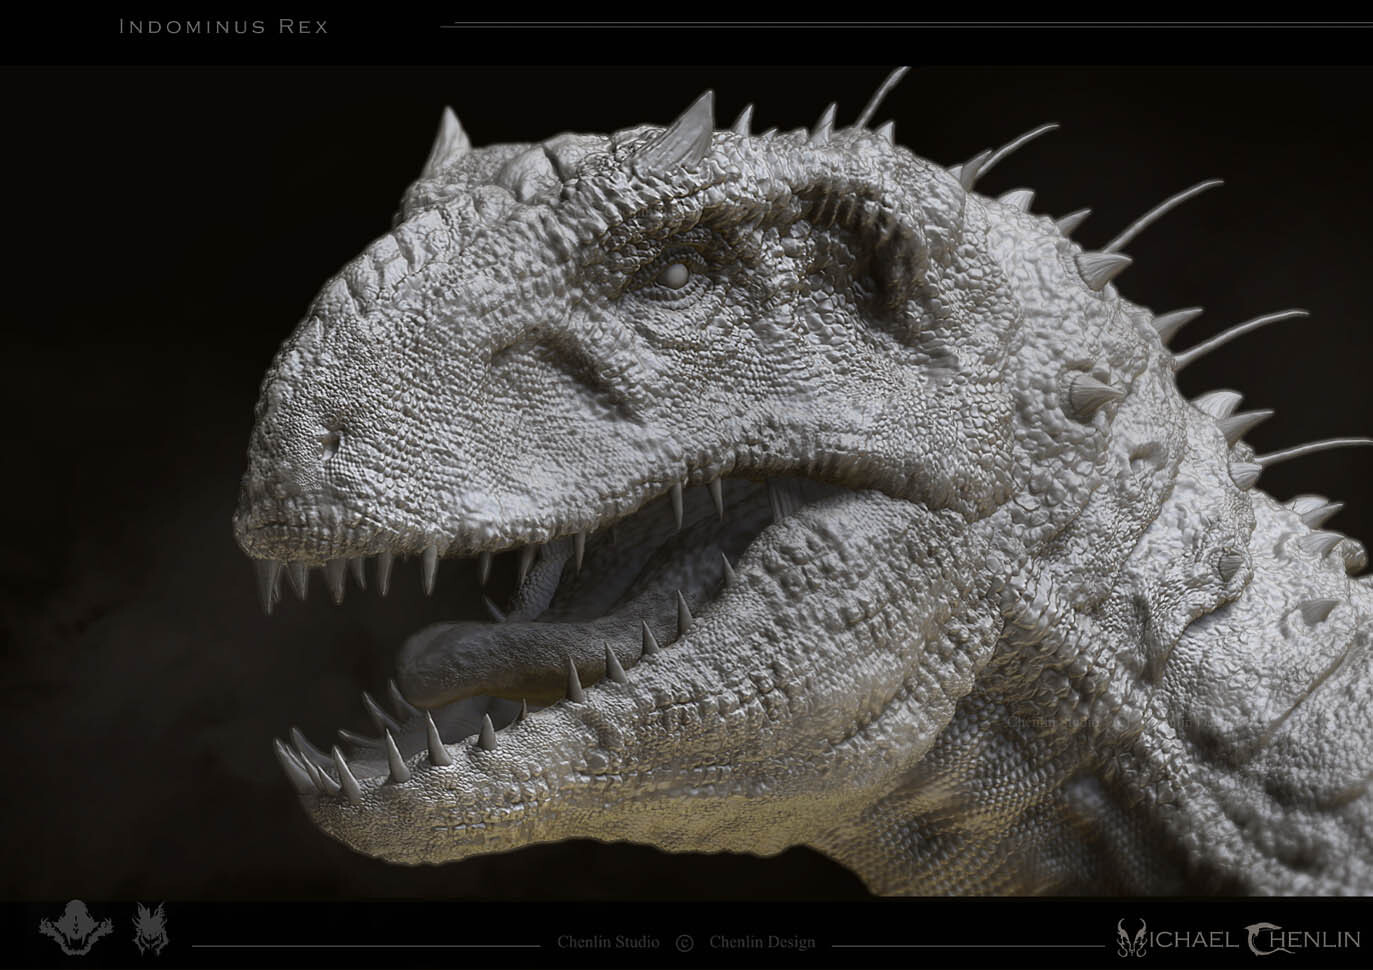 ArtStation - Indominus Rex Sculpt - Jurassic World Dinosaur